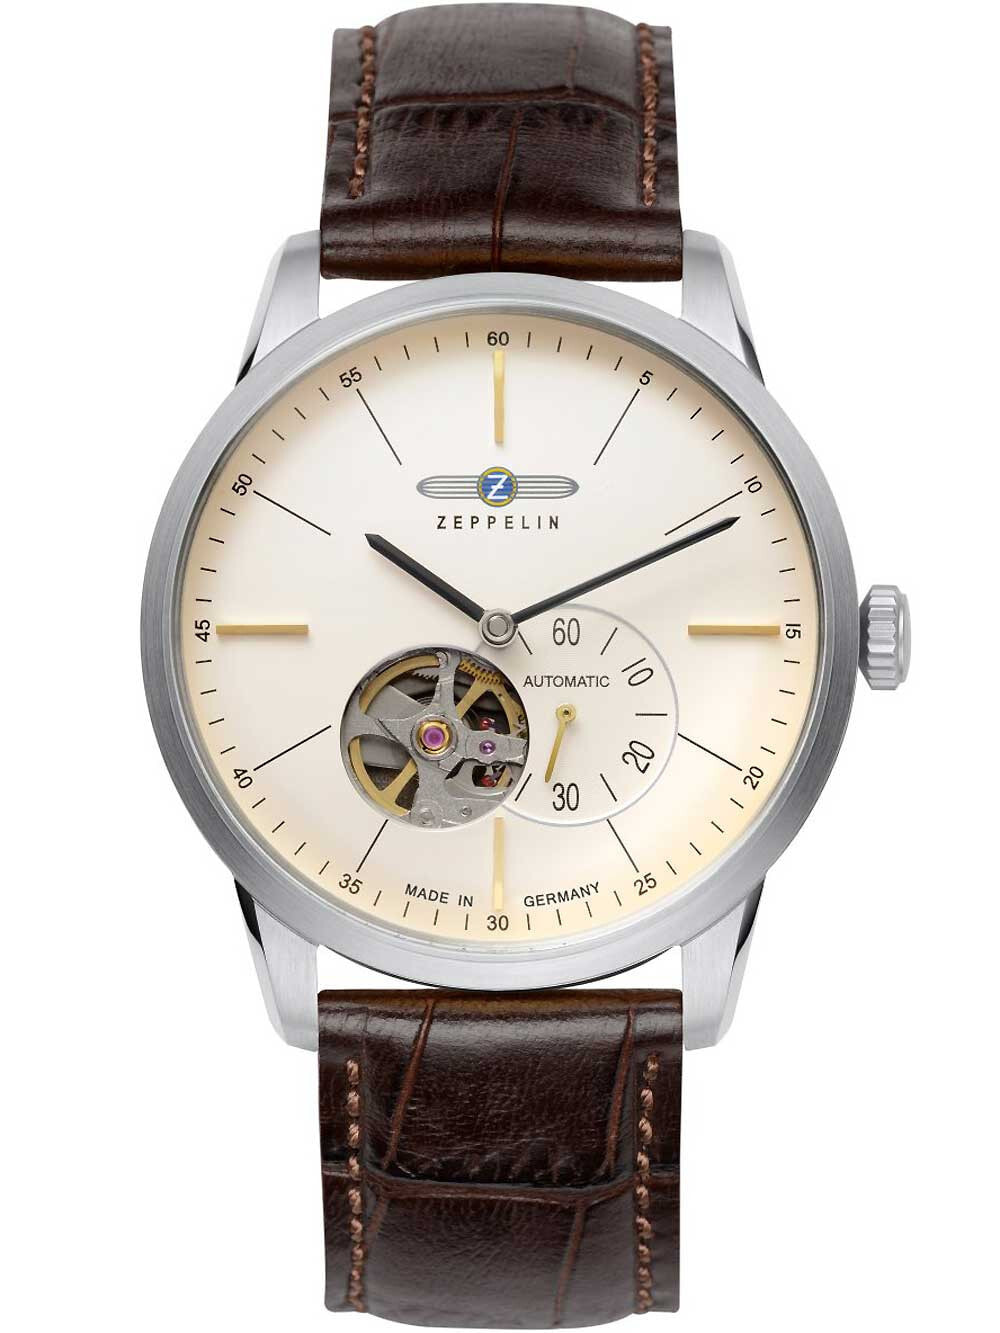 Мужские наручные часы с кожаным коричневым ремешком Zeppelin 7364-5 flatline automatic Open Heart 40mm 5ATM